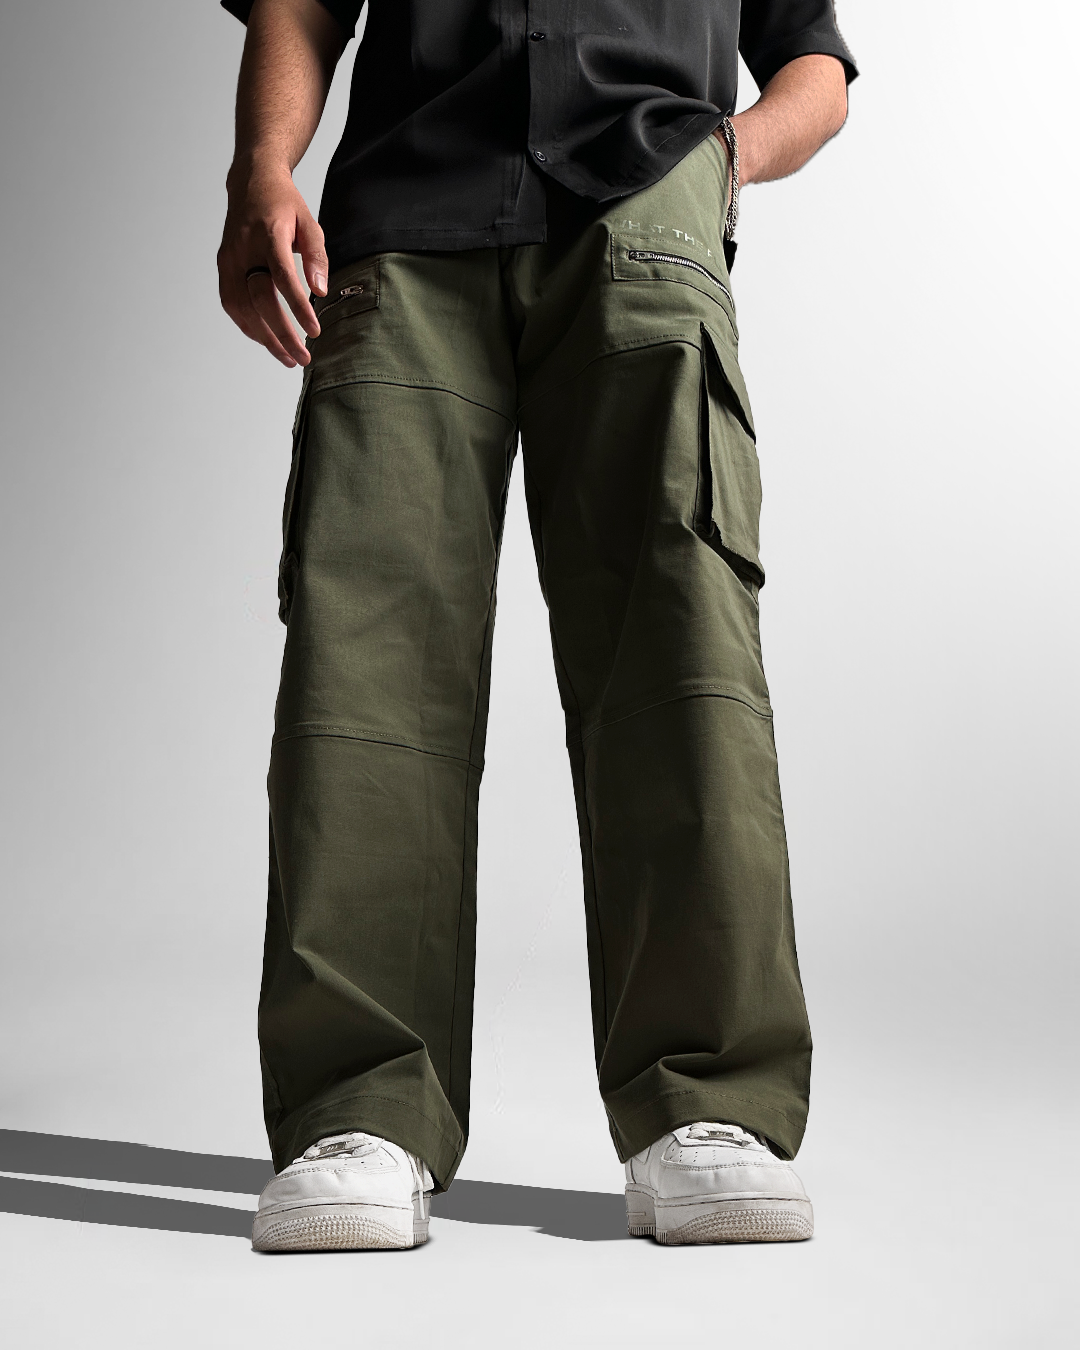 Buy t-base Men's Olive Solid Cargo Pants for Men Online India